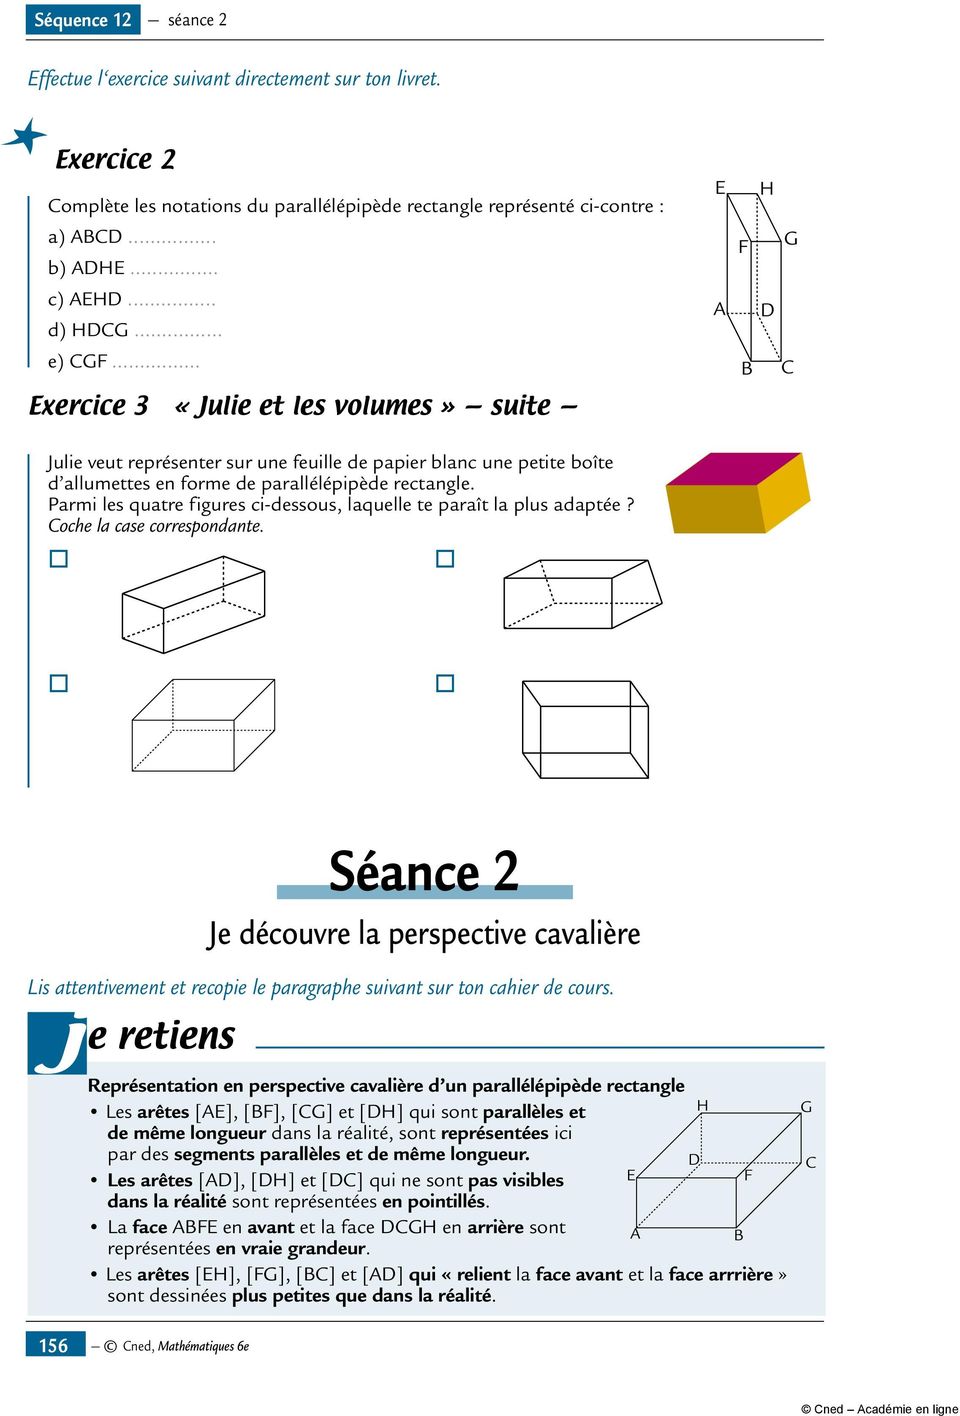 .. Exercice 3 «Julie et les volumes» suite E A H F G D B C Julie veut représenter sur une feuille de papier blanc une petite boîte d allumettes en forme de parallélépipède rectangle.